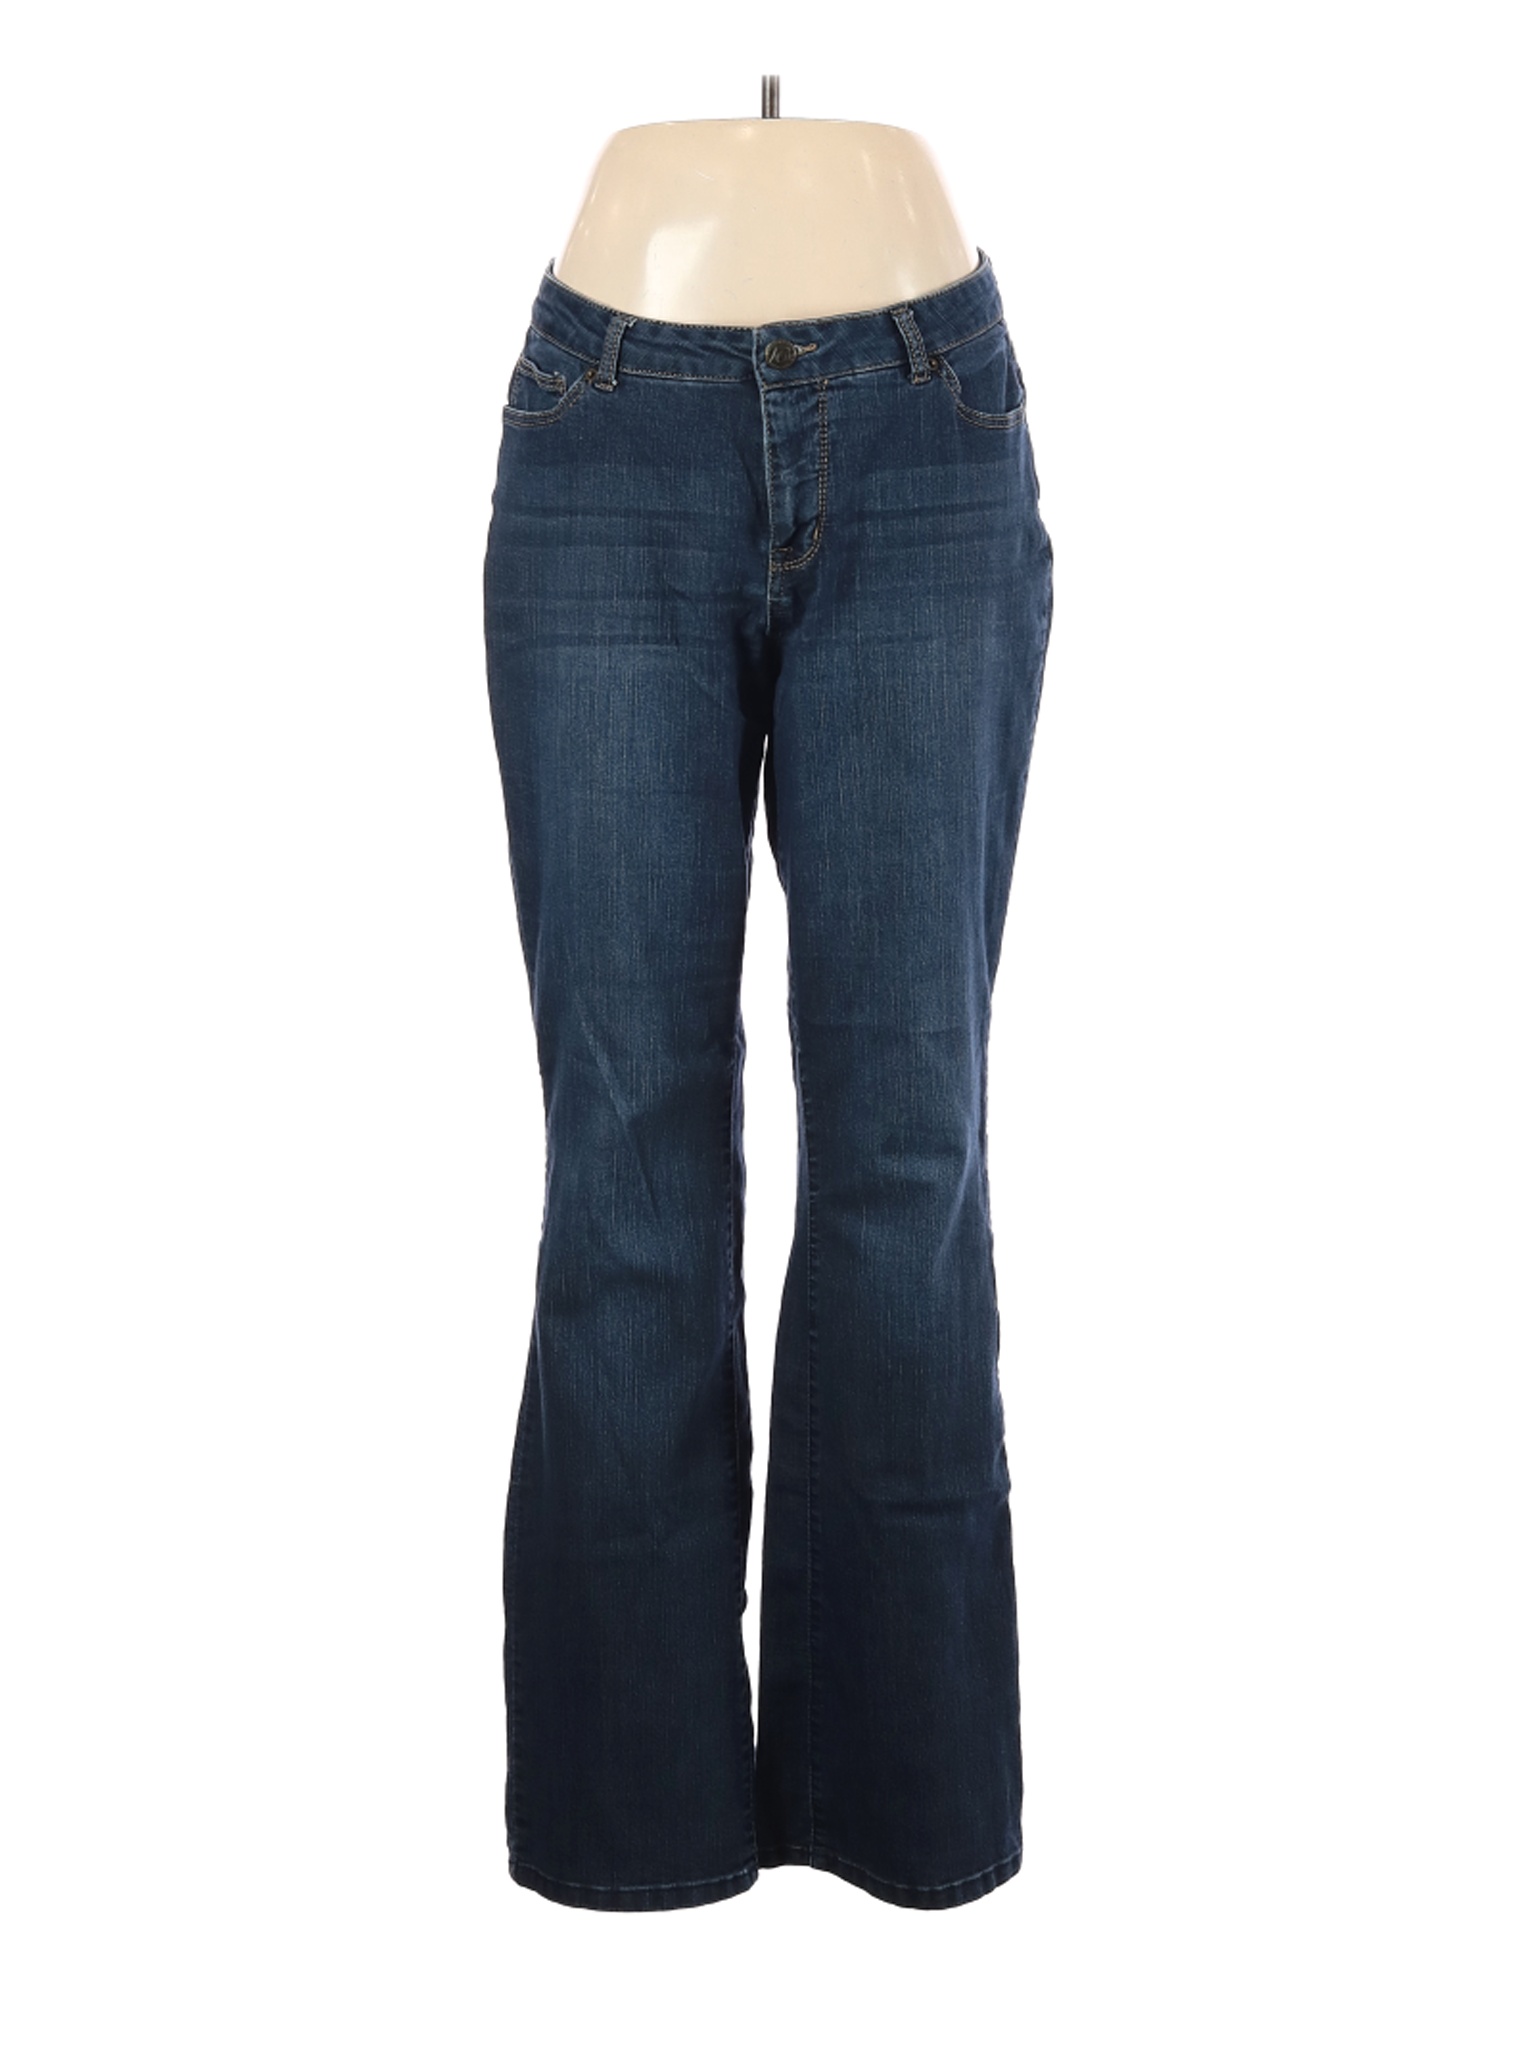 W62 Women Blue Jeans 12 Tall | eBay